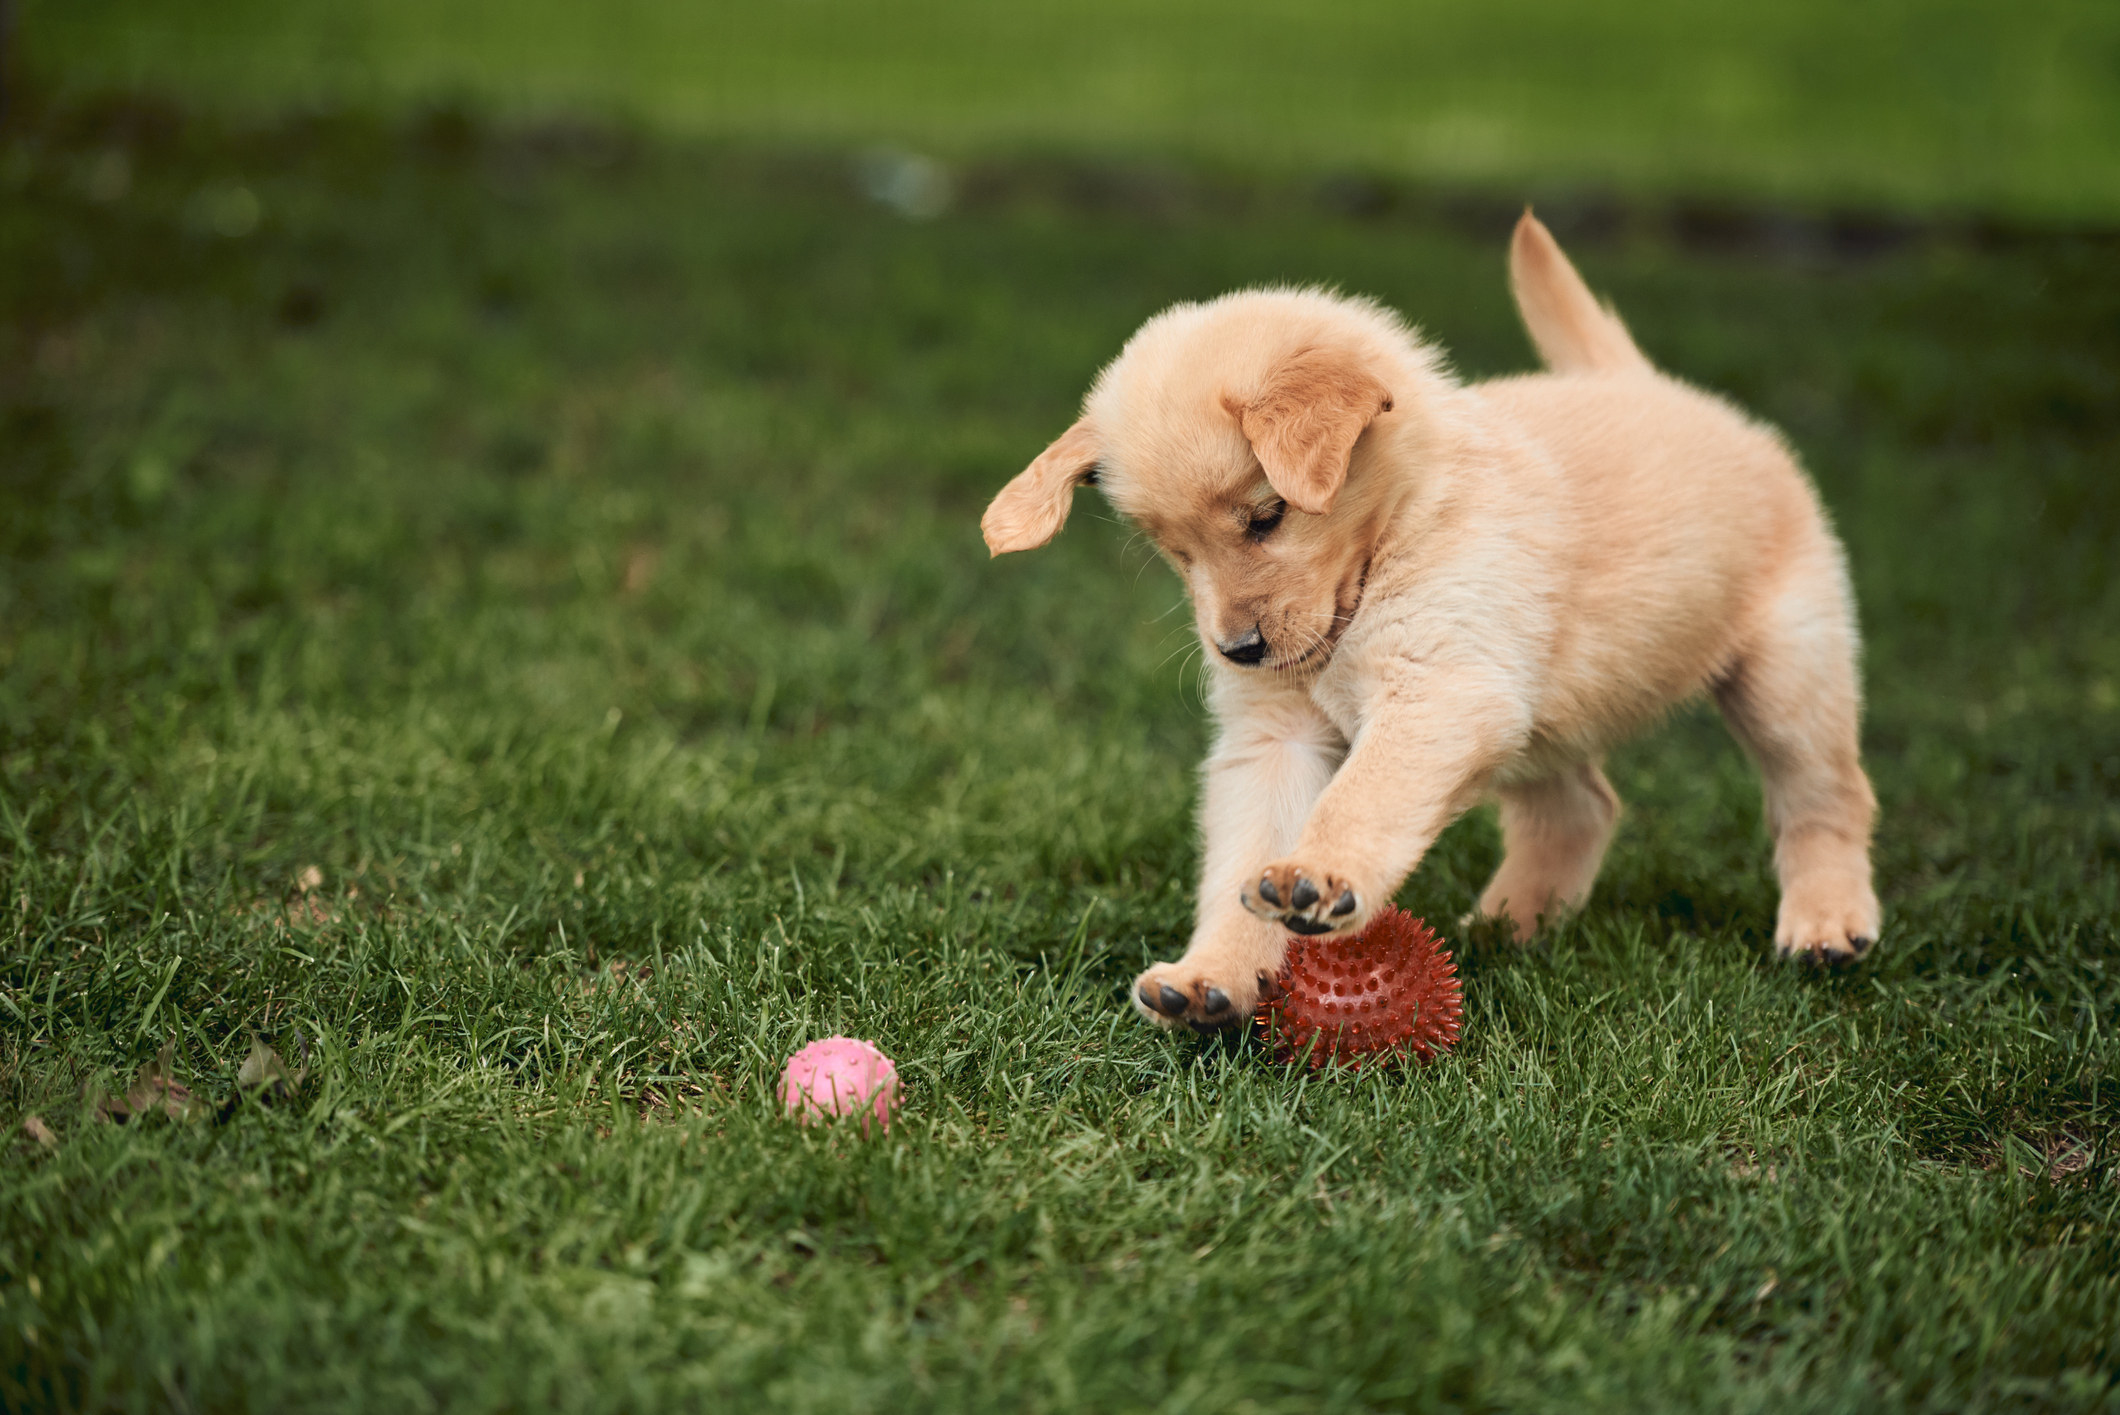 A Golden Retriever puppy playing in grass.